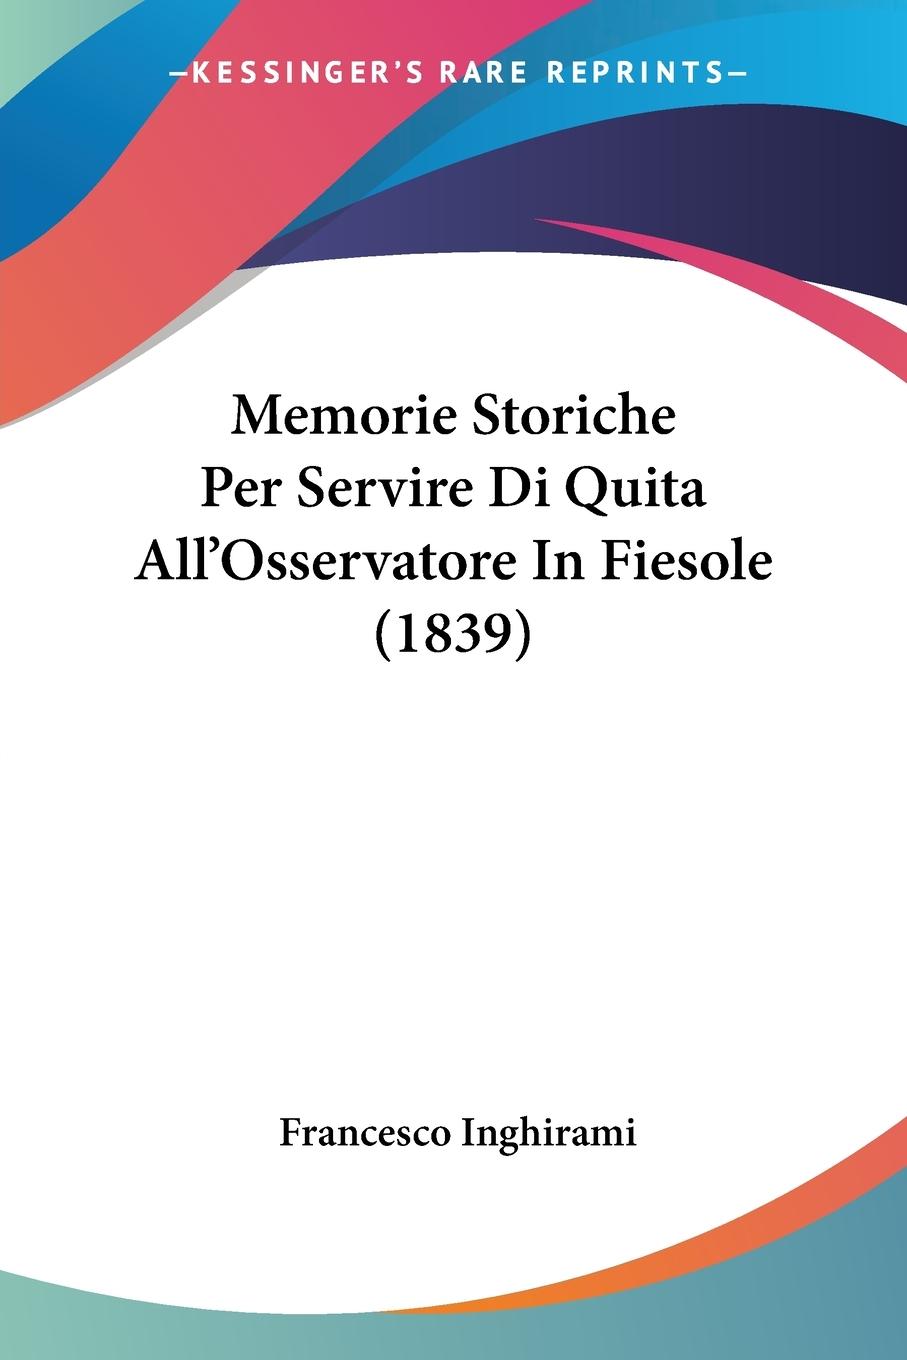 Memorie Storiche Per Servire Di Quita All Osservatore In Fiesole (1839) - Inghirami, Francesco